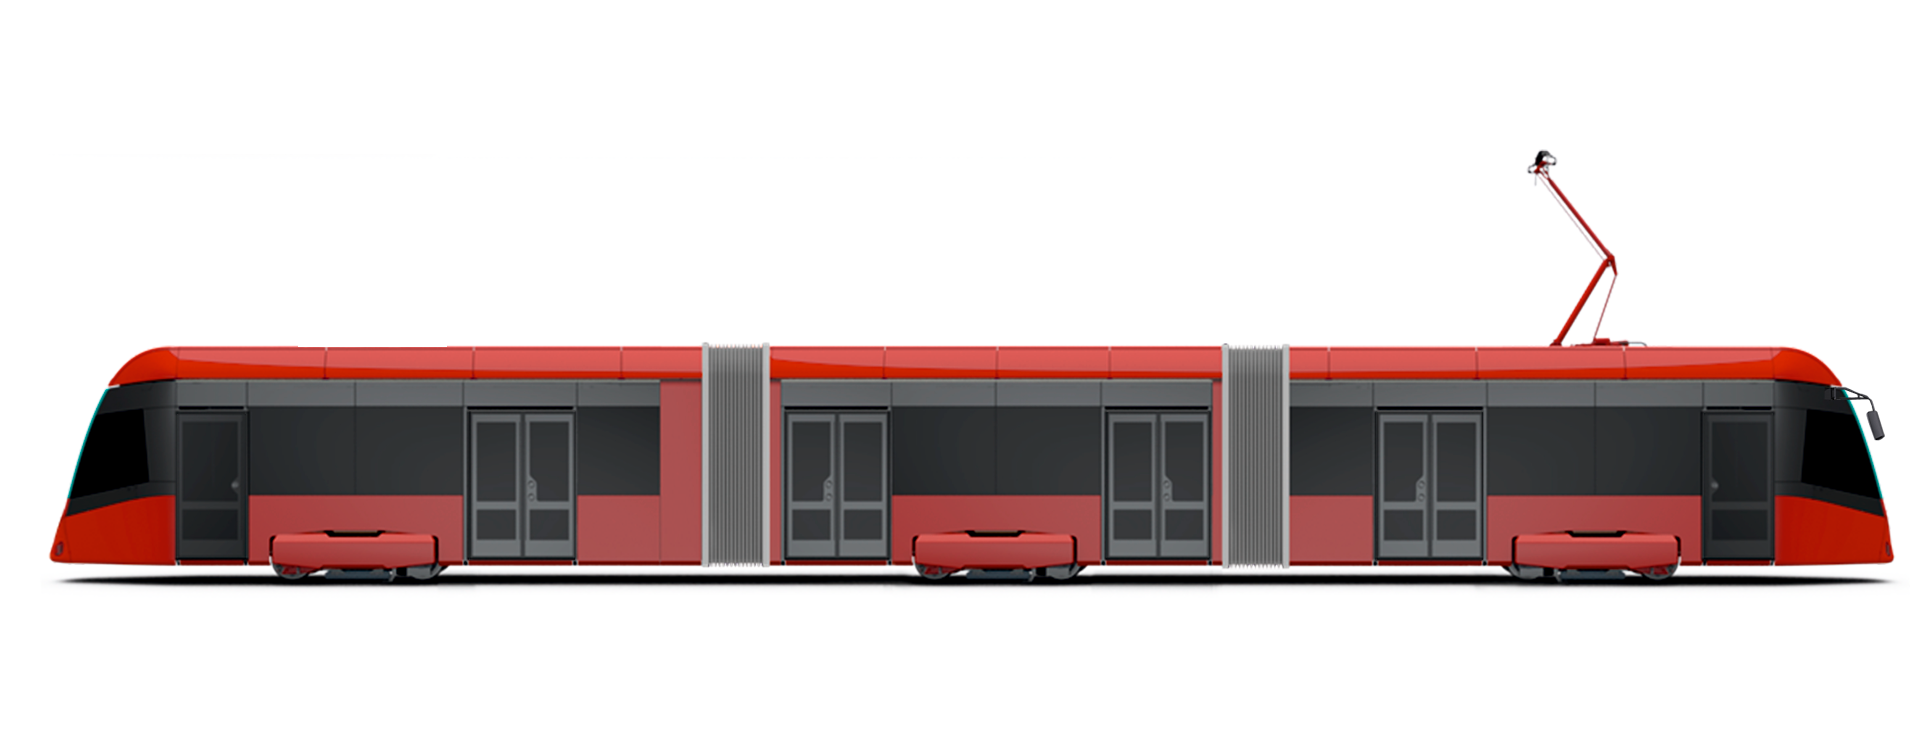 Рендер трамвая модели Т856 от BKM Holding для Нижнего Новгорода